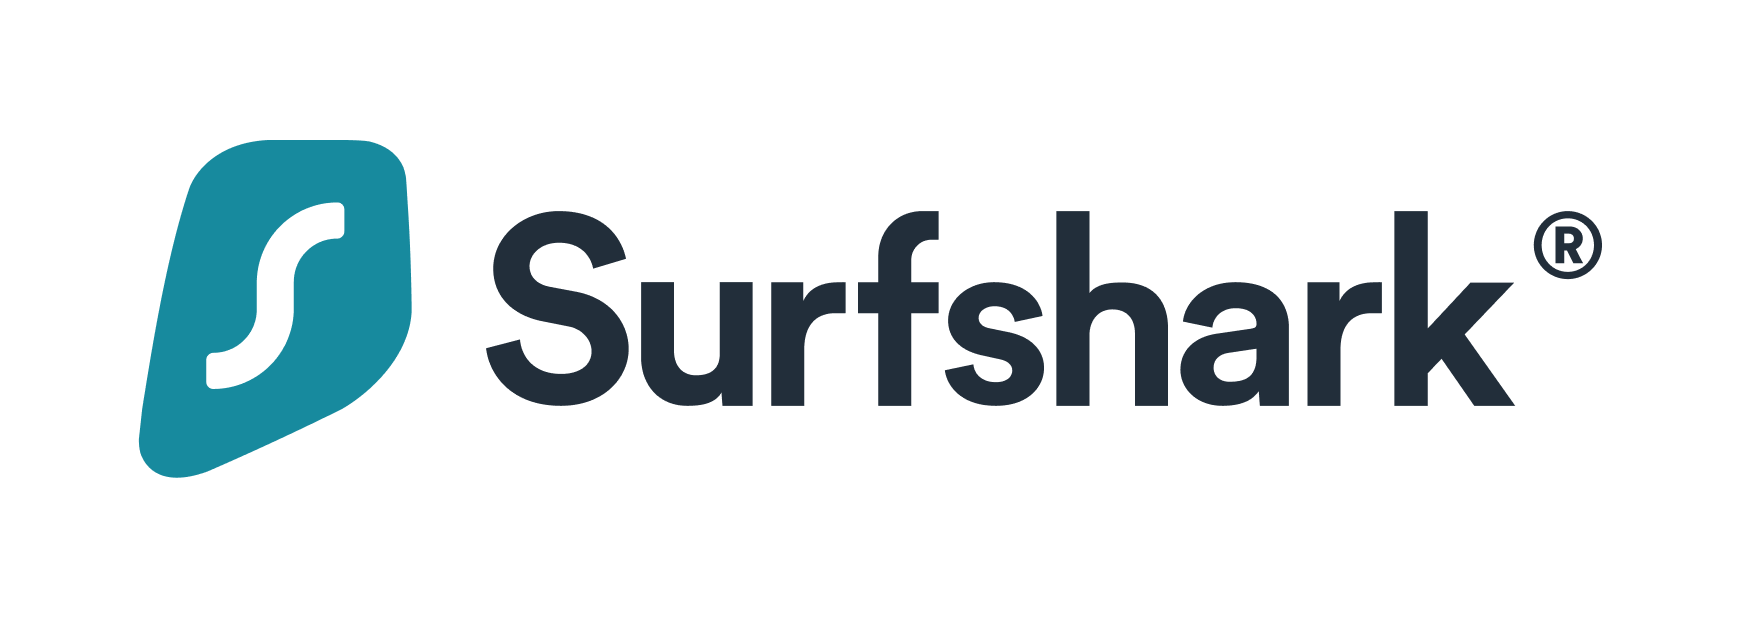 surfsharkロゴ